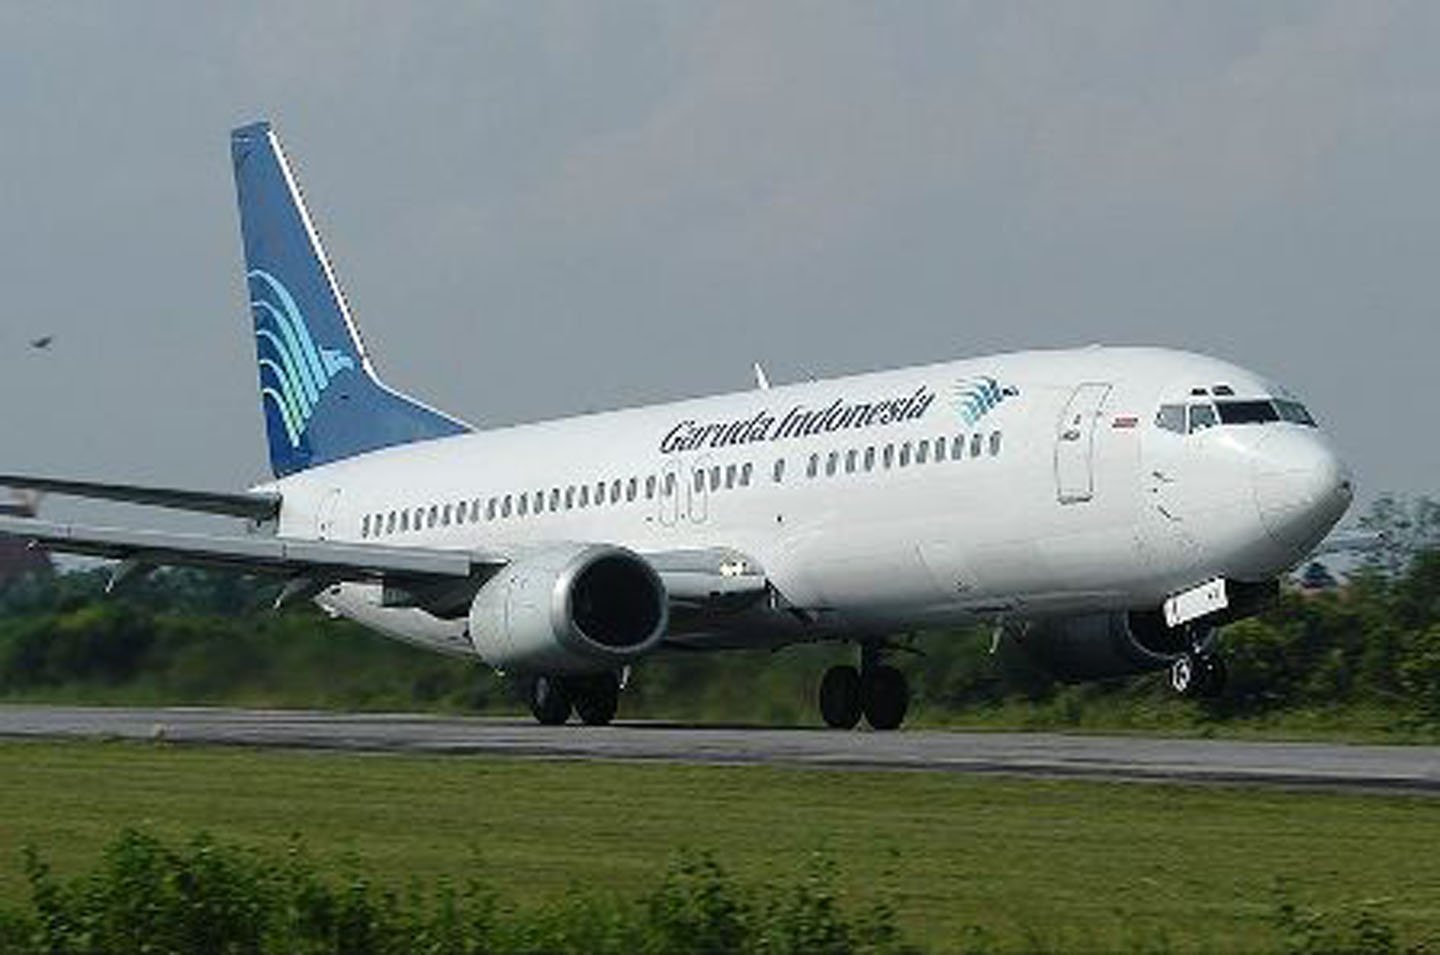 2007 - Garuda Indonesia Penerbangan 200 tergelincir